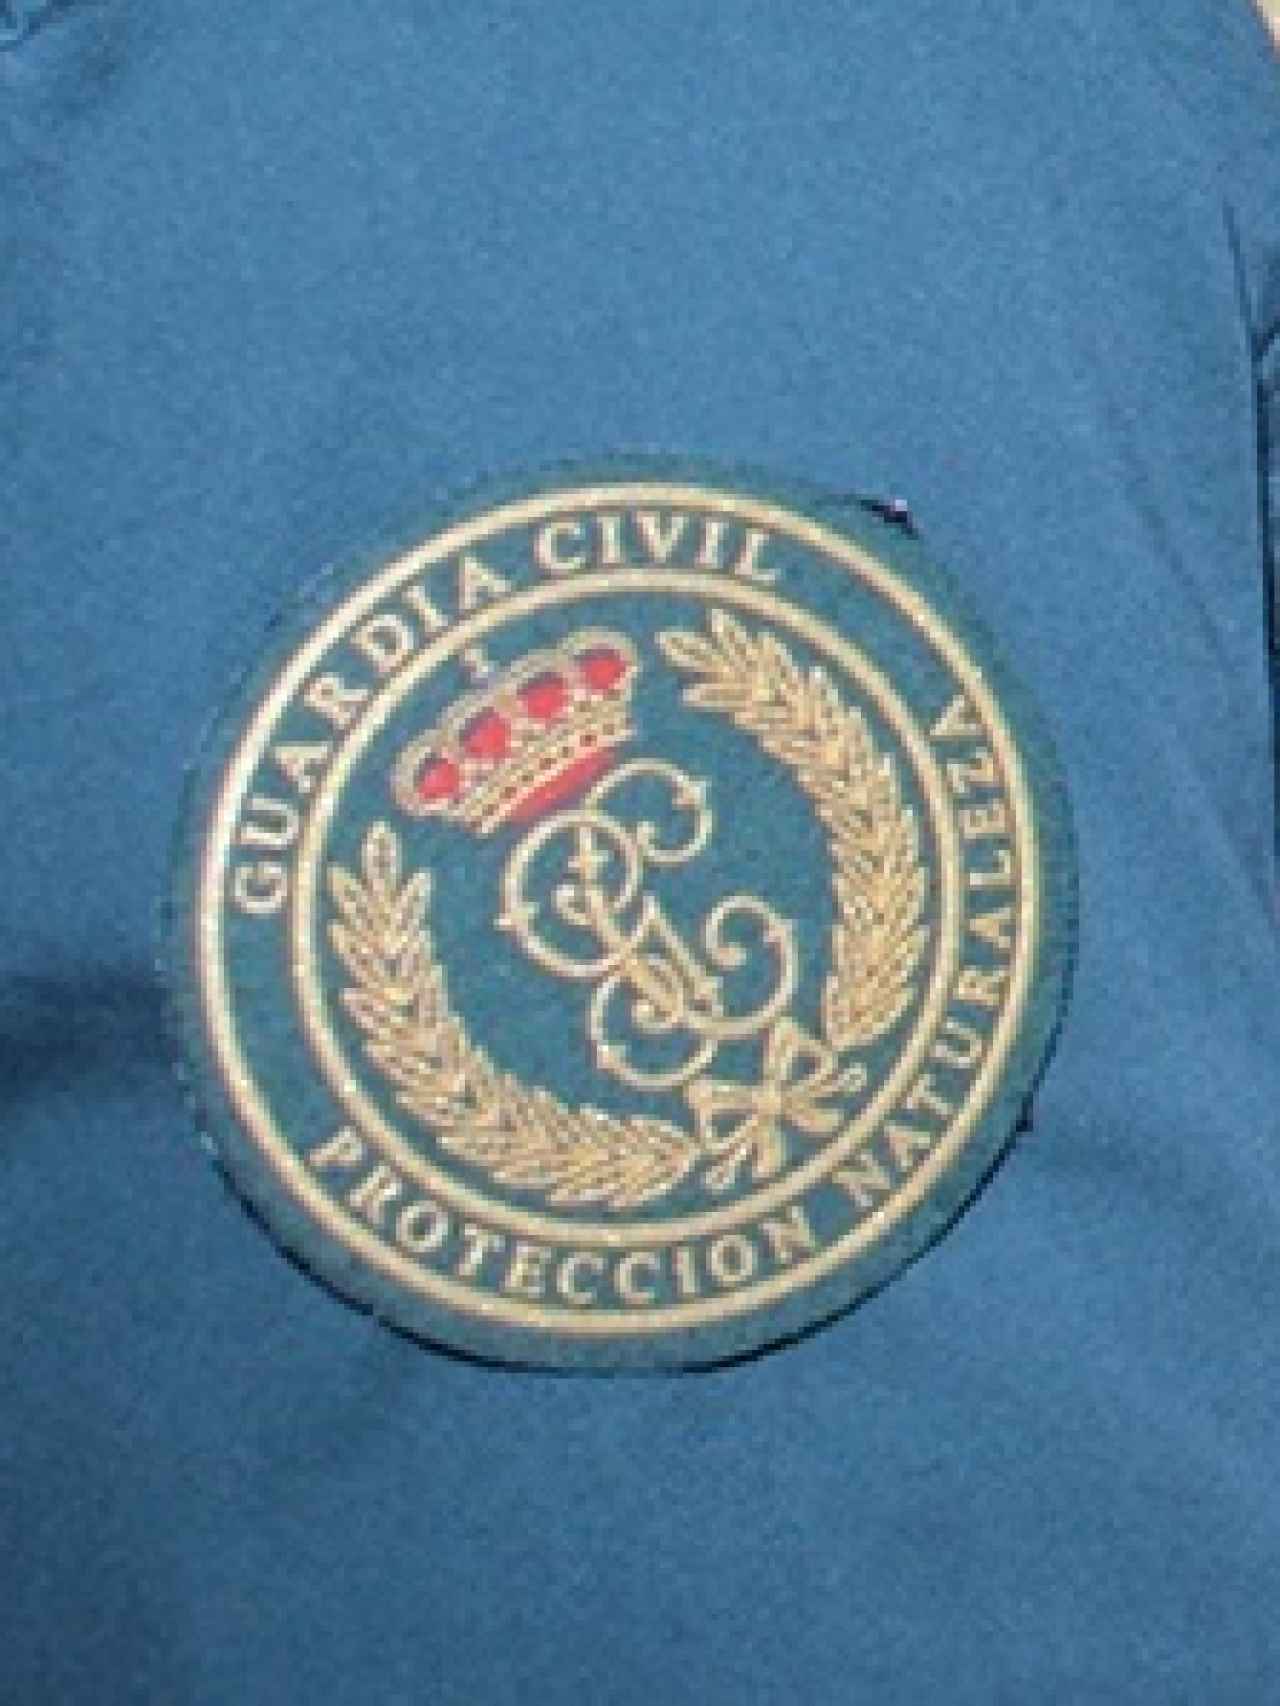 Logotipo del Seprona en el uniforme de un agente